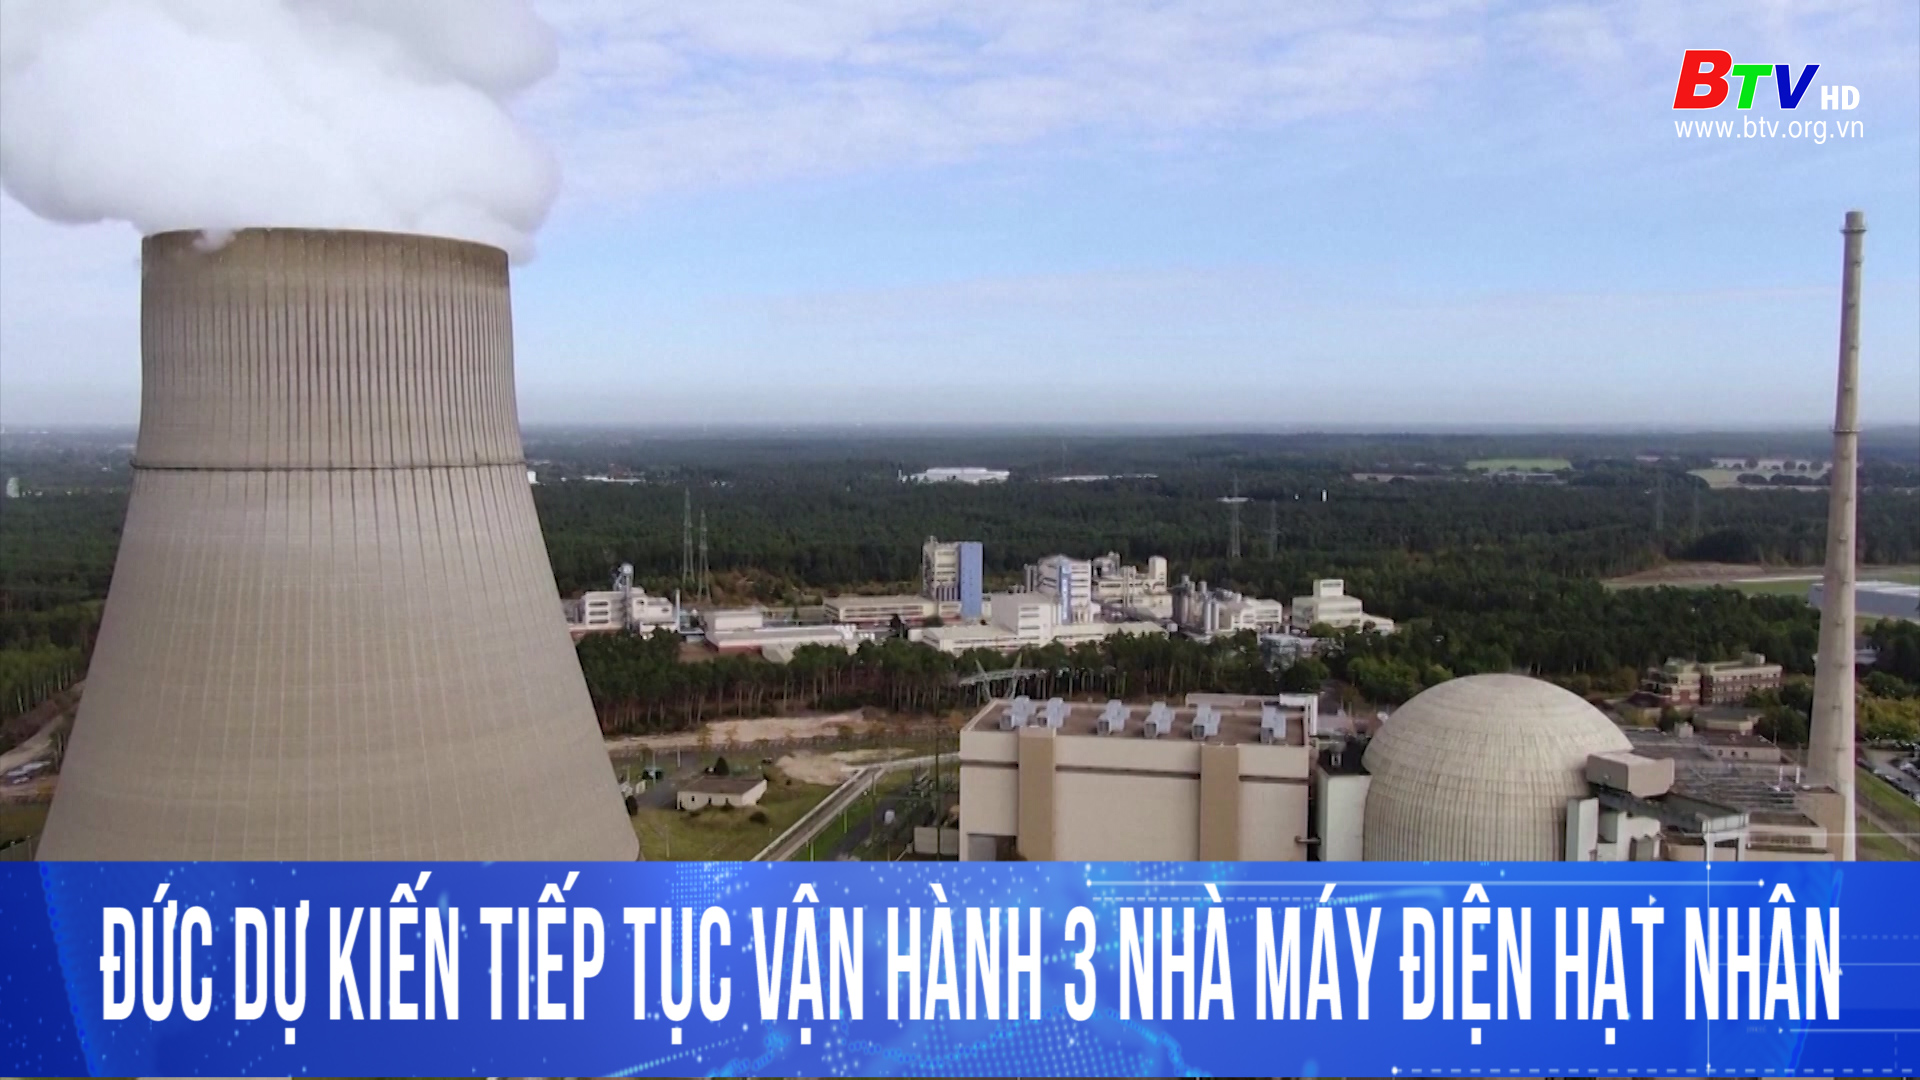 Đức dự kiến tiếp tục vận hành 3 nhà máy điện hạt nhân